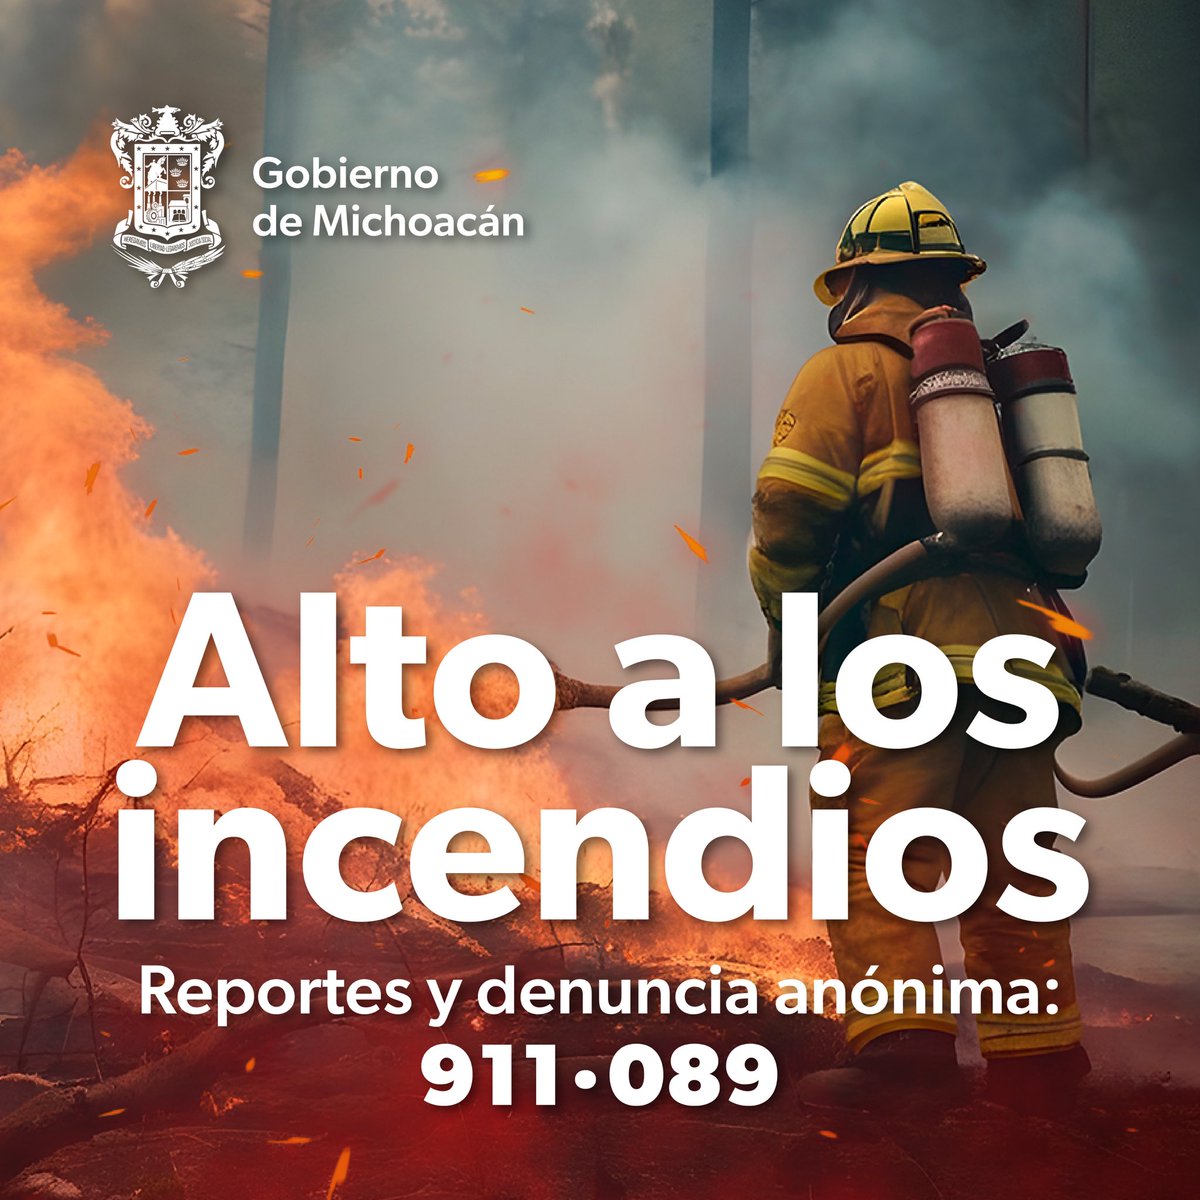 Los incendios forestales pueden salirse de control en un instante, es muy importante actuar de manera rápida y certera. Si ves un incendio reporta al 911.